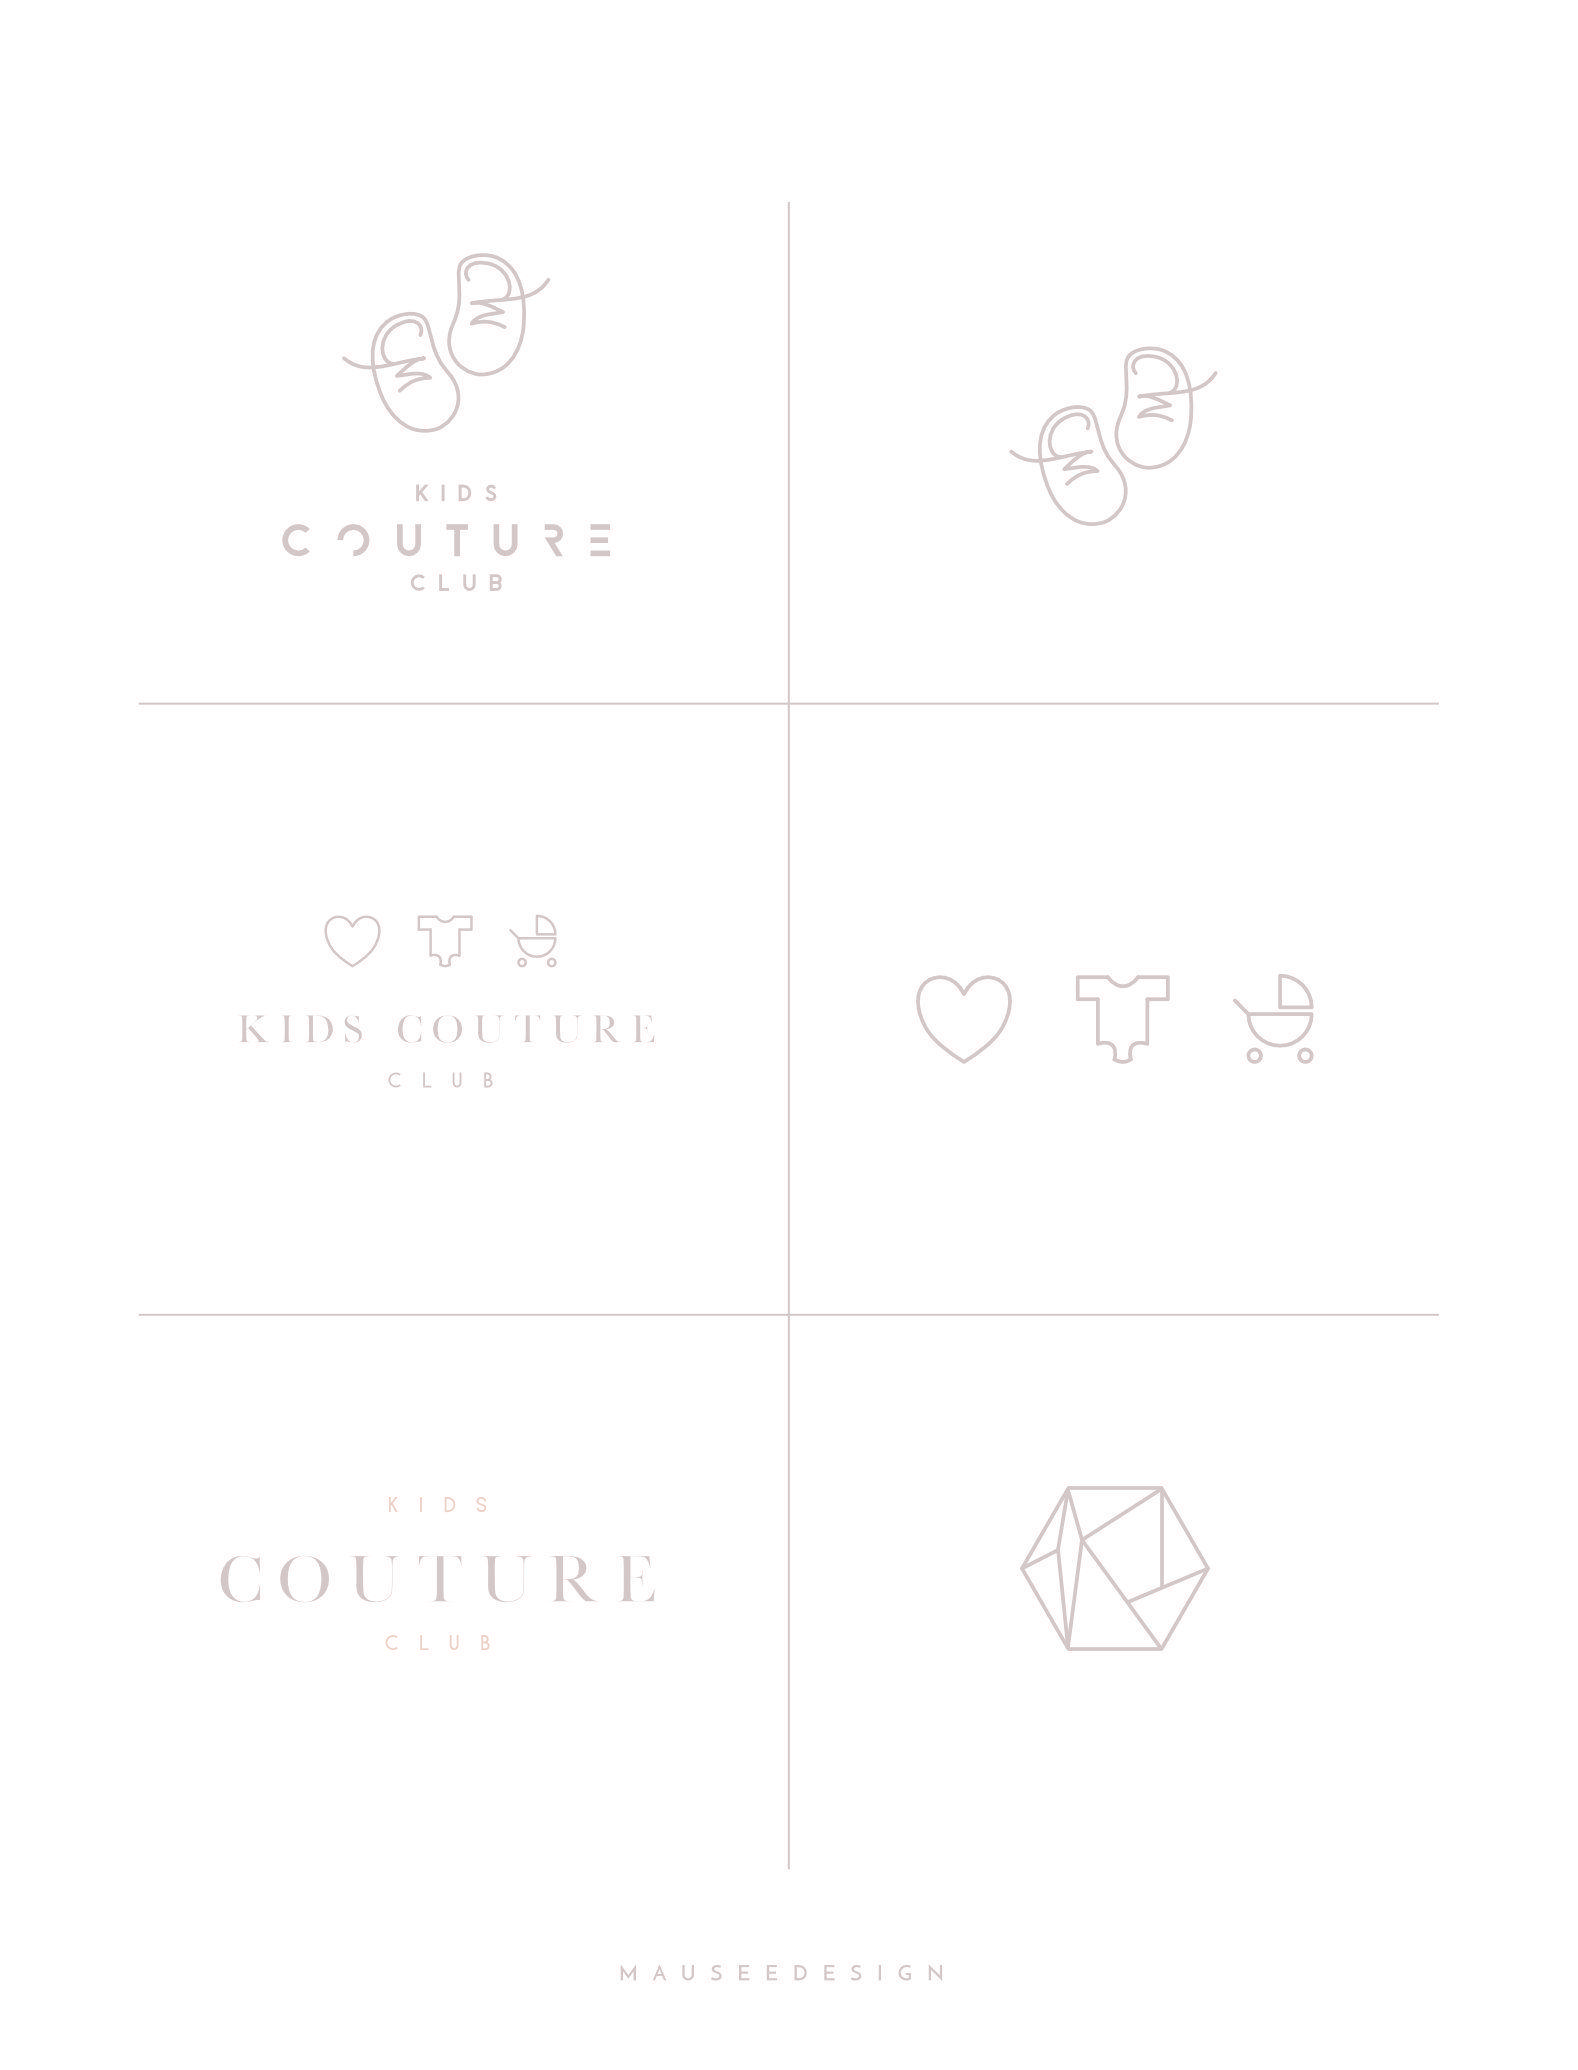 Couture Club Logo - Kids Couture Club Logo Design Exploration. Design::Branding::Logo